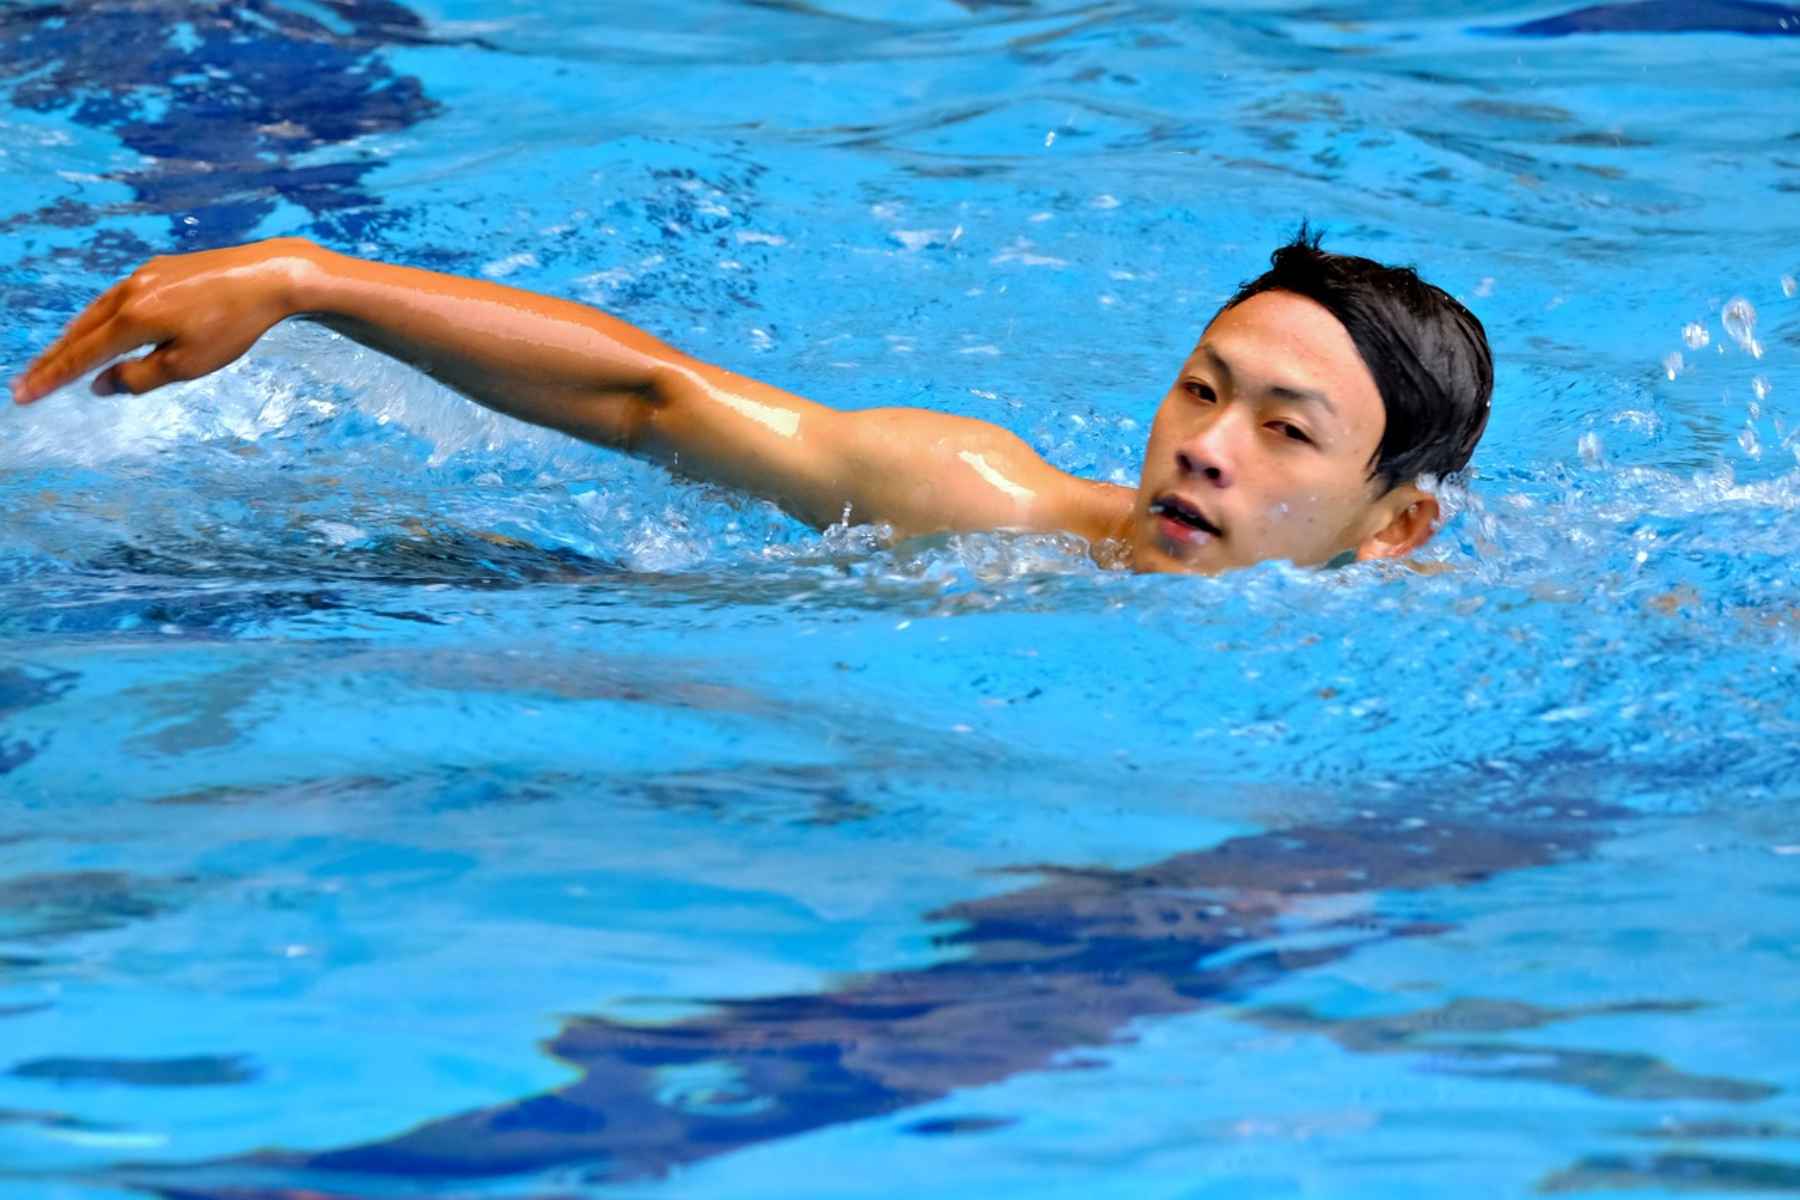 Κολύμπι οφέλη: Σωματικά και πνευματικά οφέλη της κολύμβησης